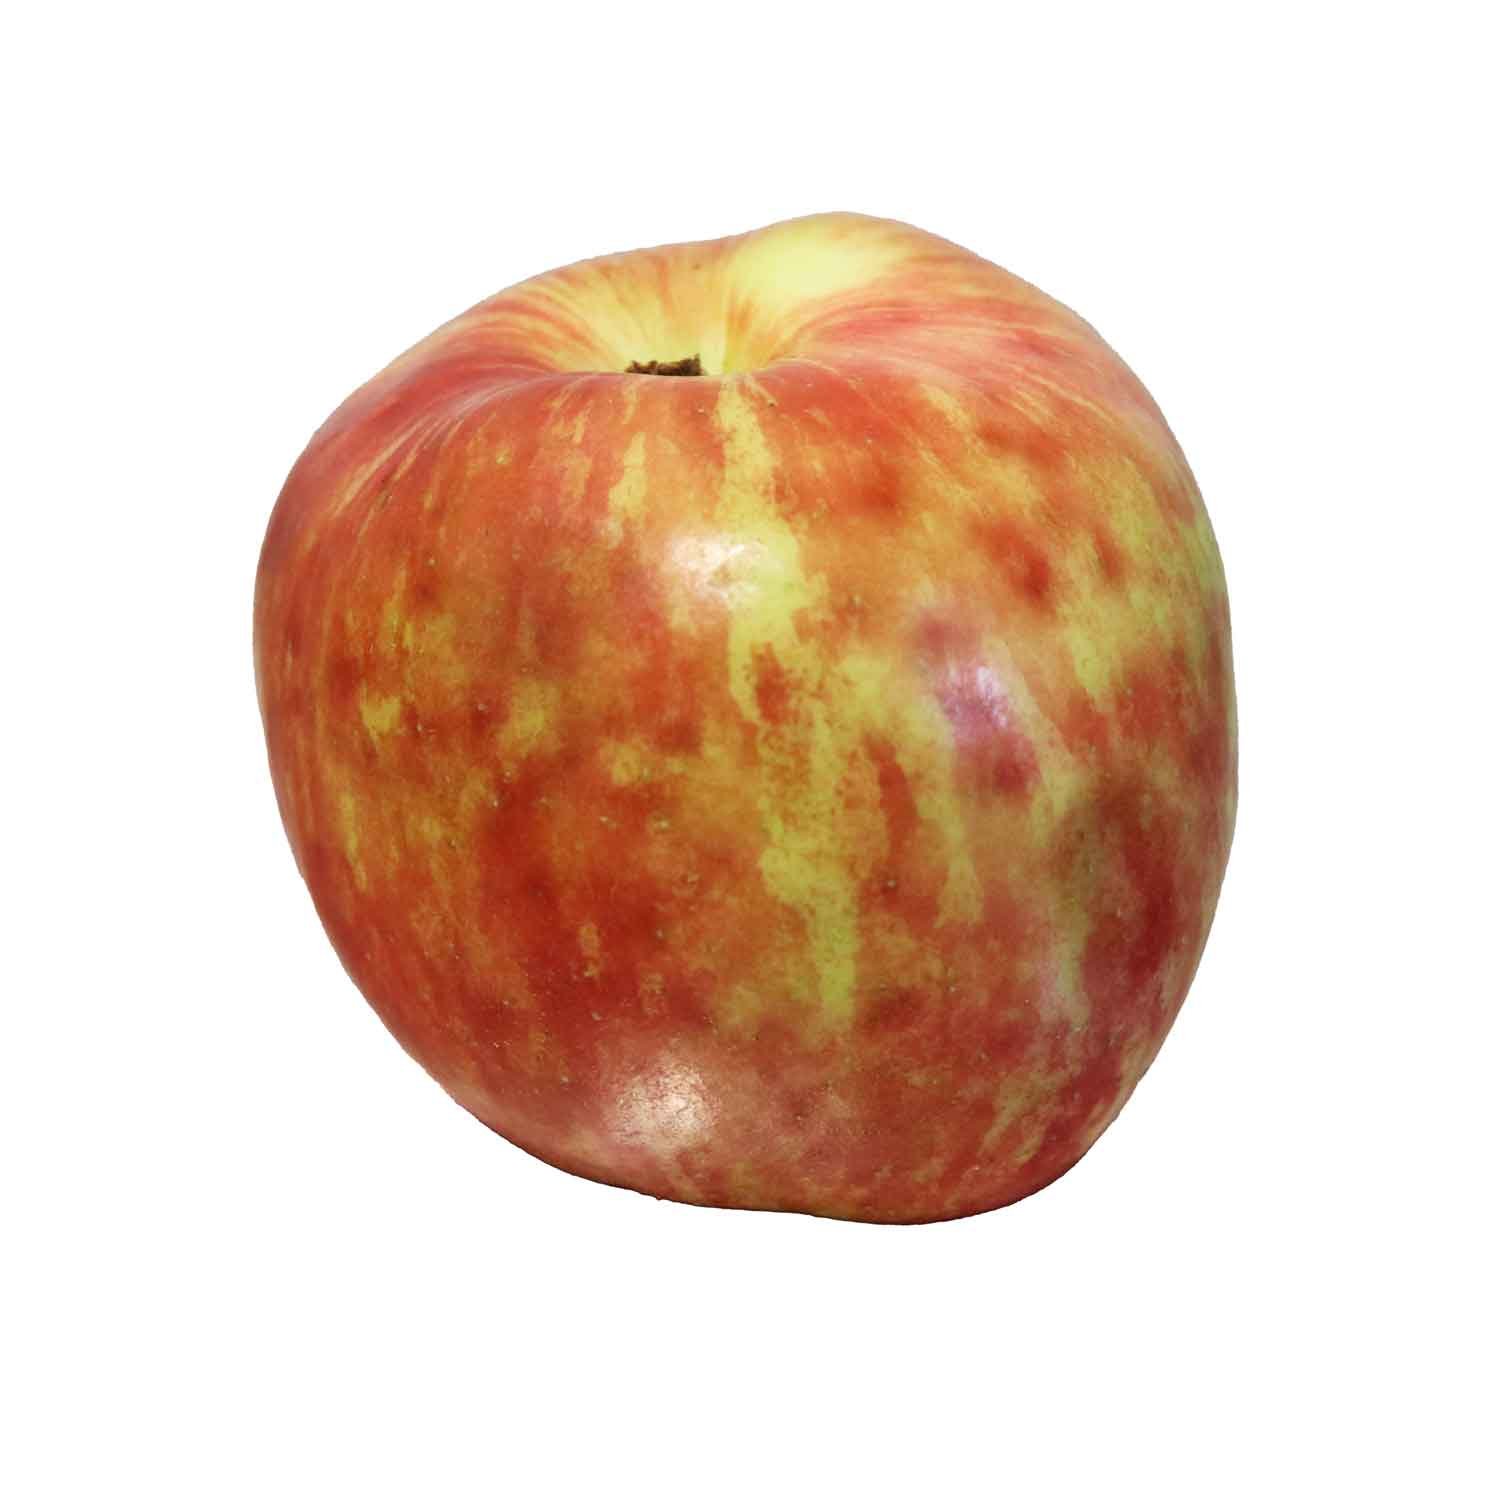 Æbletræ 'Rød Gråsten' M9